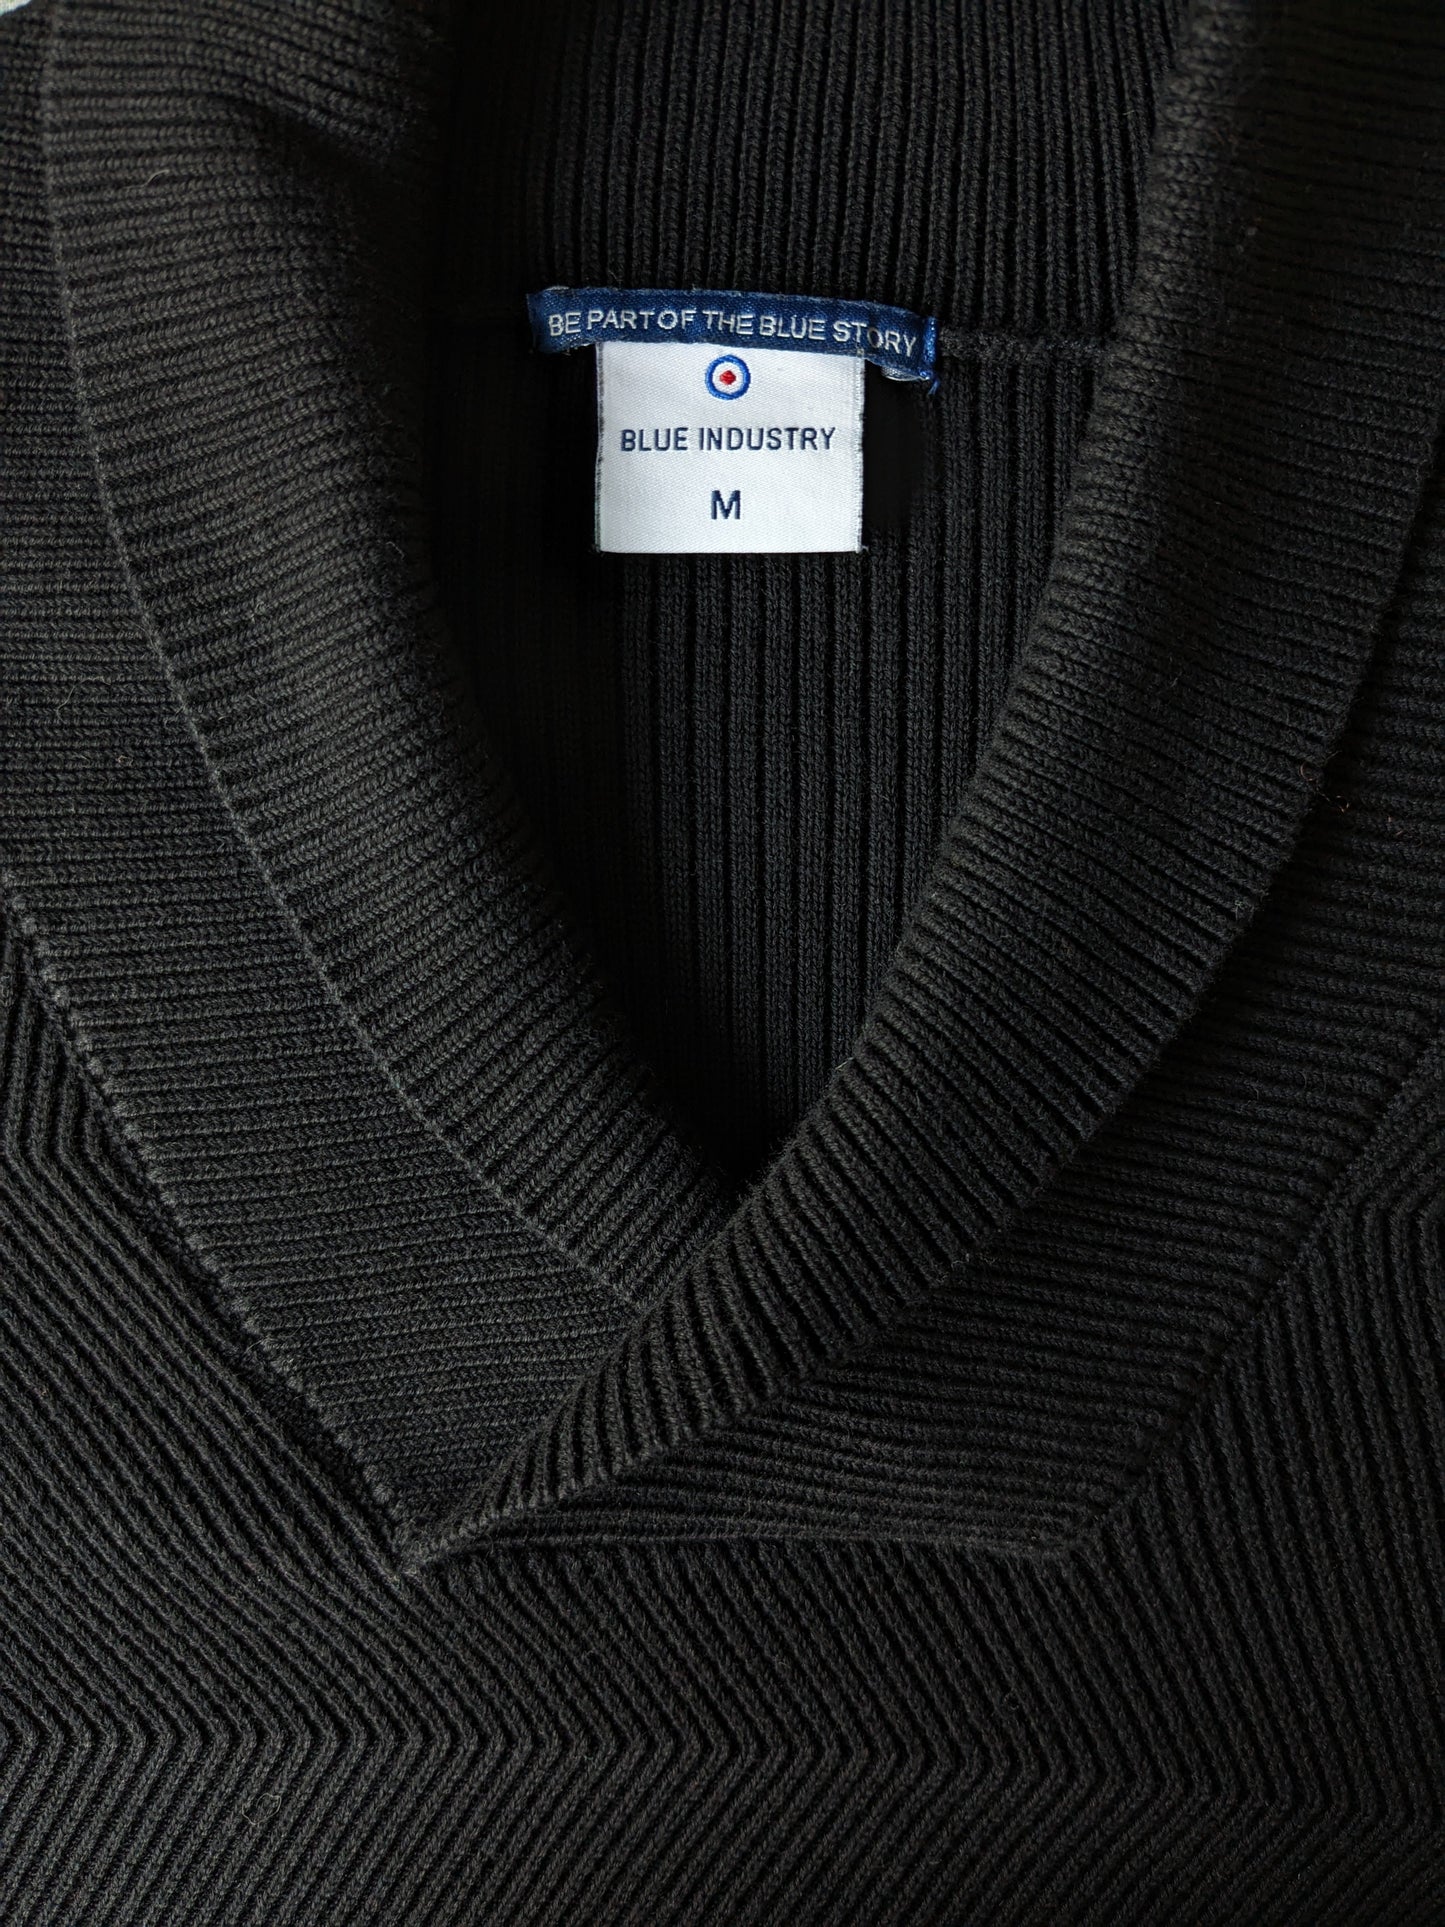 Suéter de la industria azul con collar deportivo. Motivo de costilla negra. Talla M.